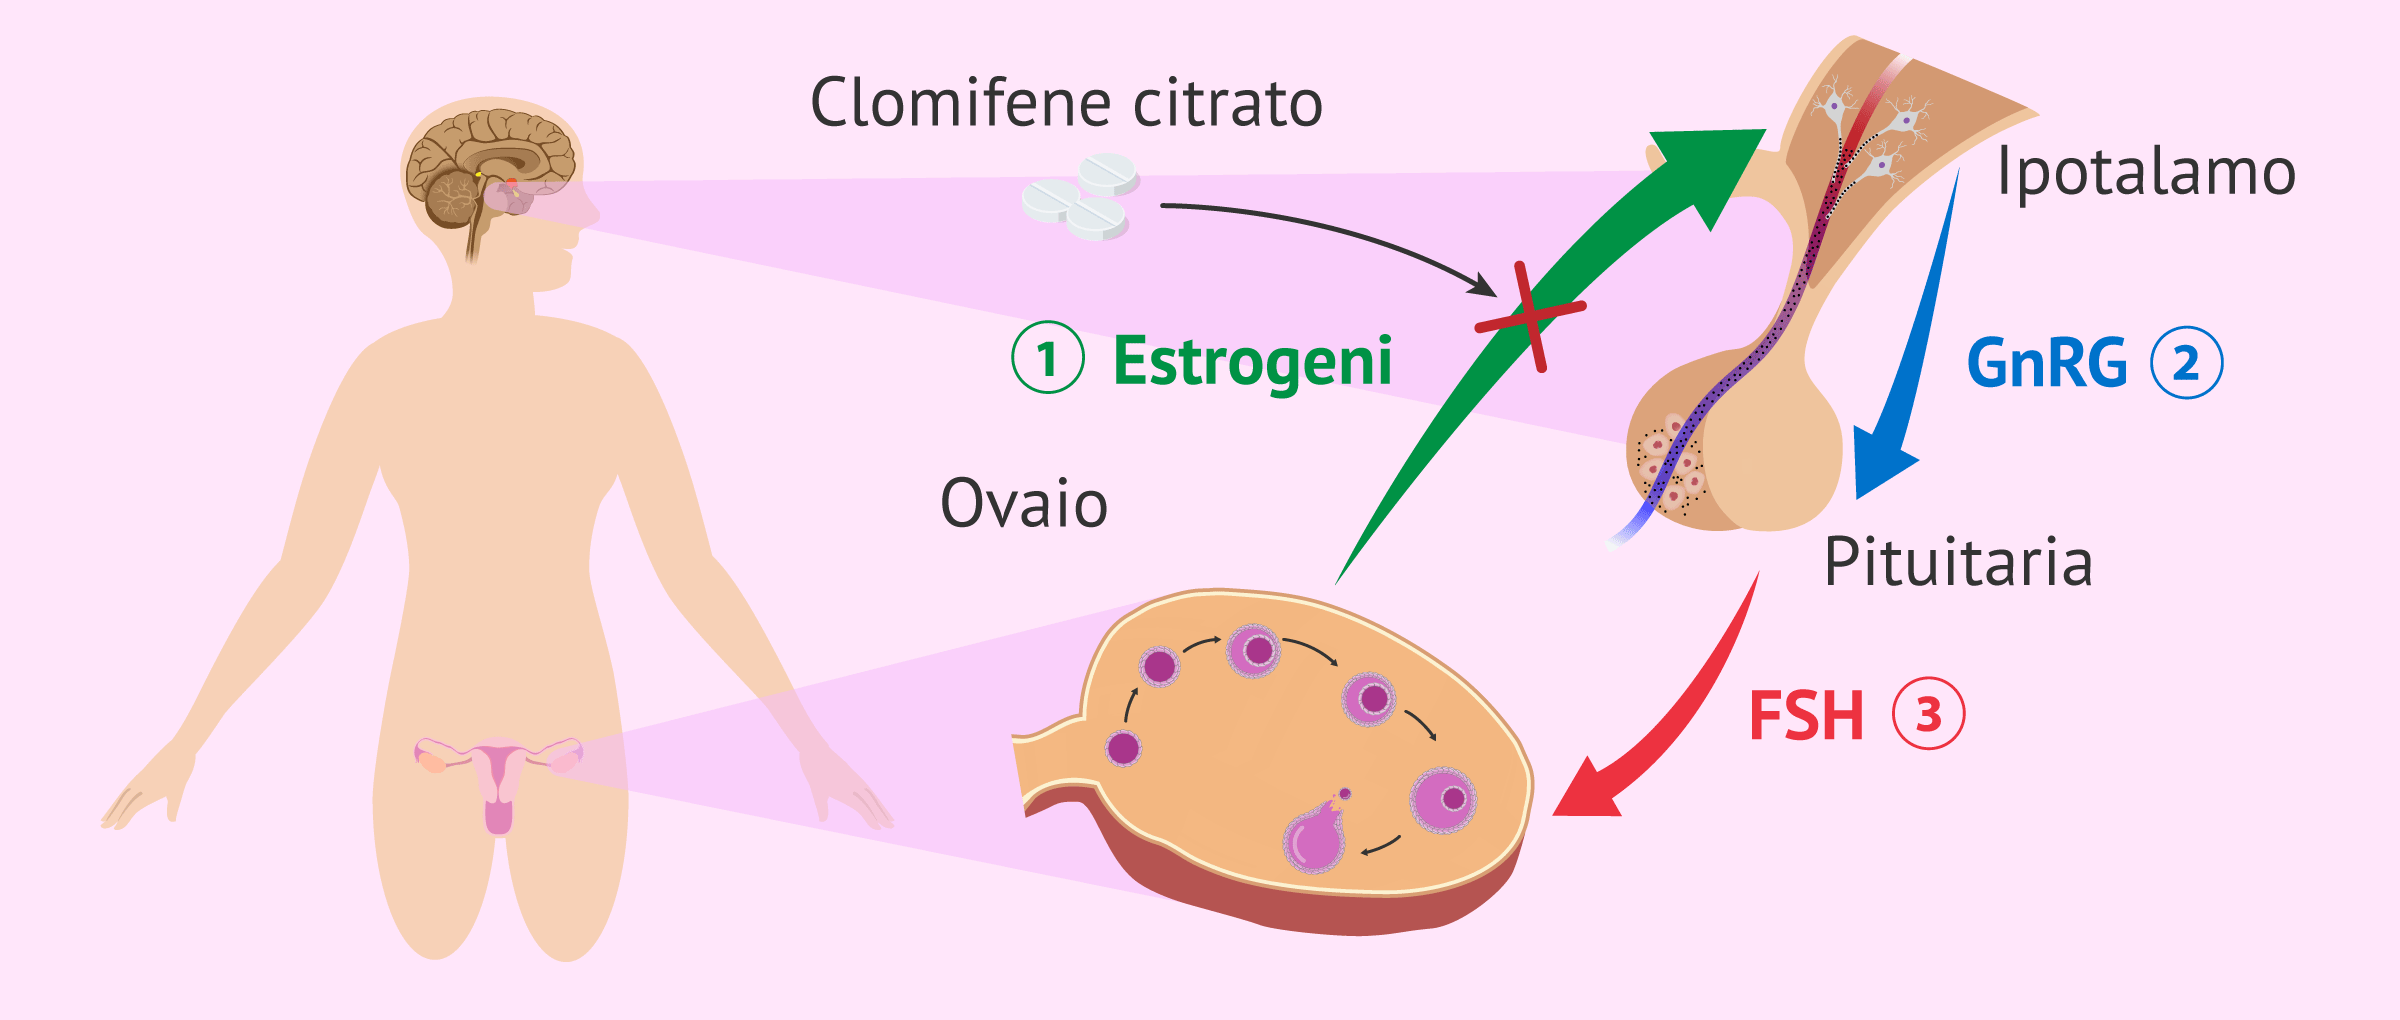 Clomifene citrato per l'induzione dell'ovulazione